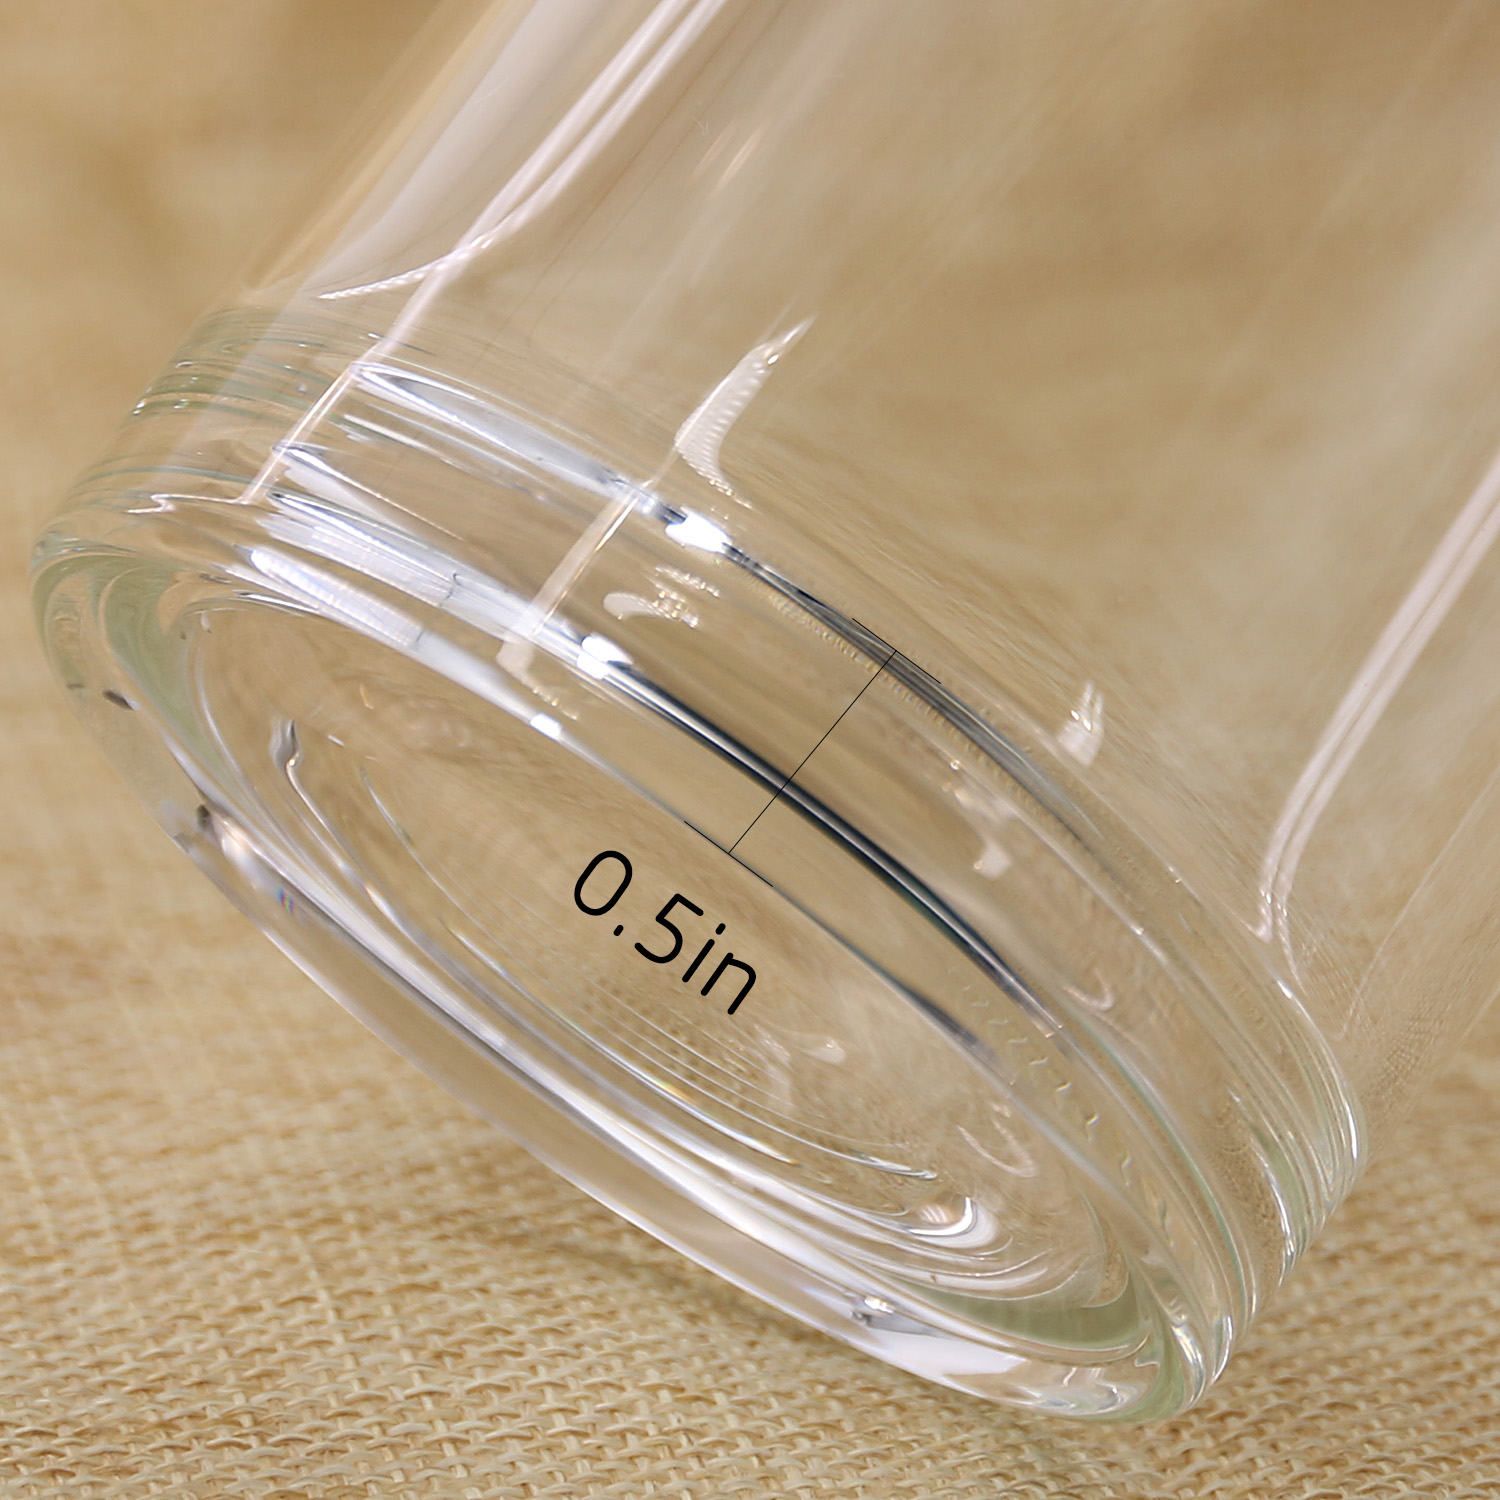 Bonison, Borosilicate Glass Water Bottle with Assorted Colorful Nylon Sleeve, BPA Free, 18.5 oz - image 3 of 6